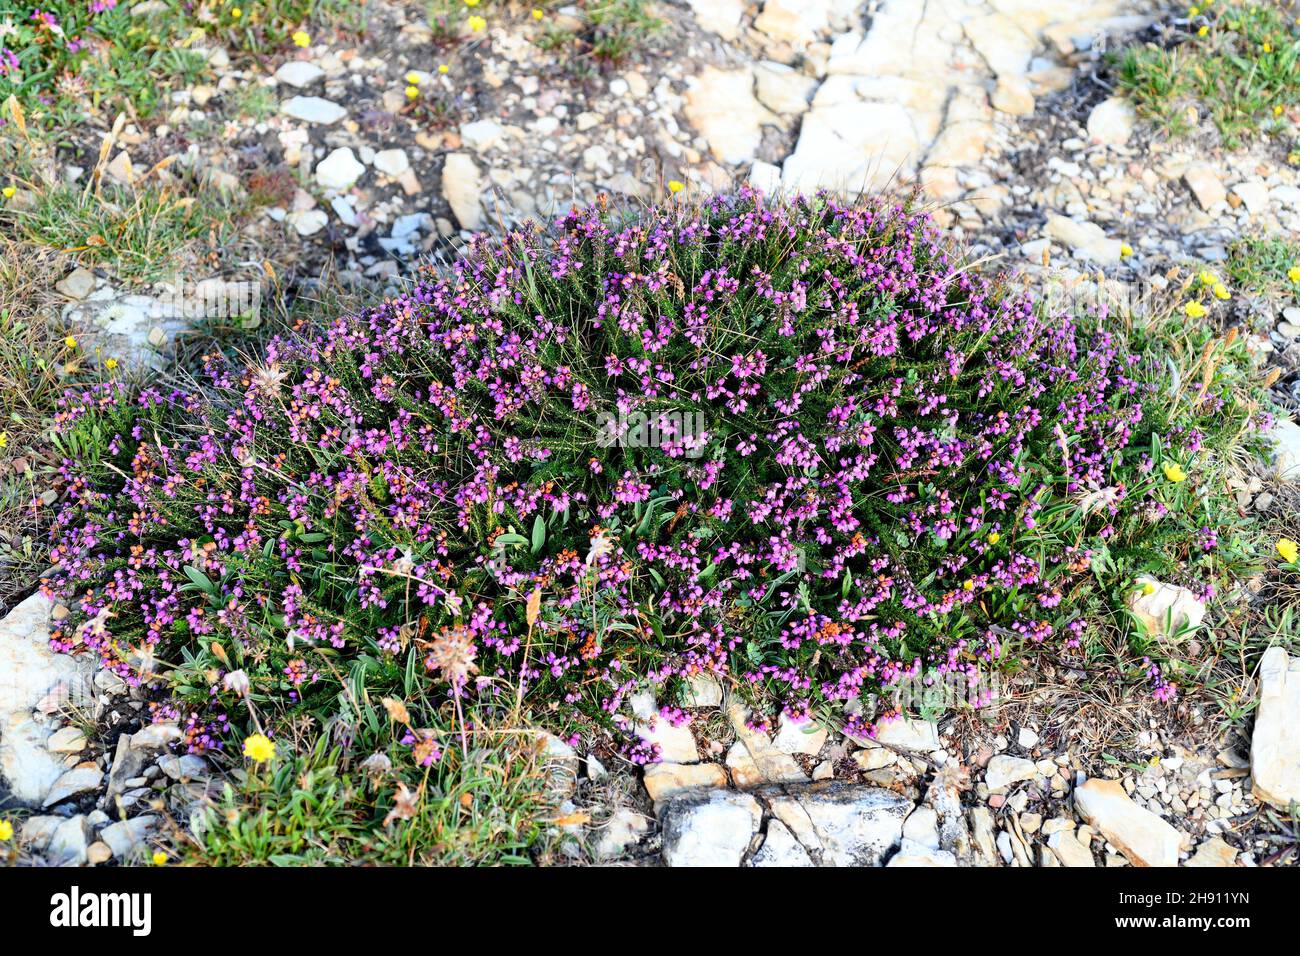 La bruyère de Bell (Erica cinerea) est un arbuste originaire d'Europe occidentale, du nord de l'Espagne au sud de la Norvège.Cette photo a été prise à Ribadeo, Lugo, Banque D'Images